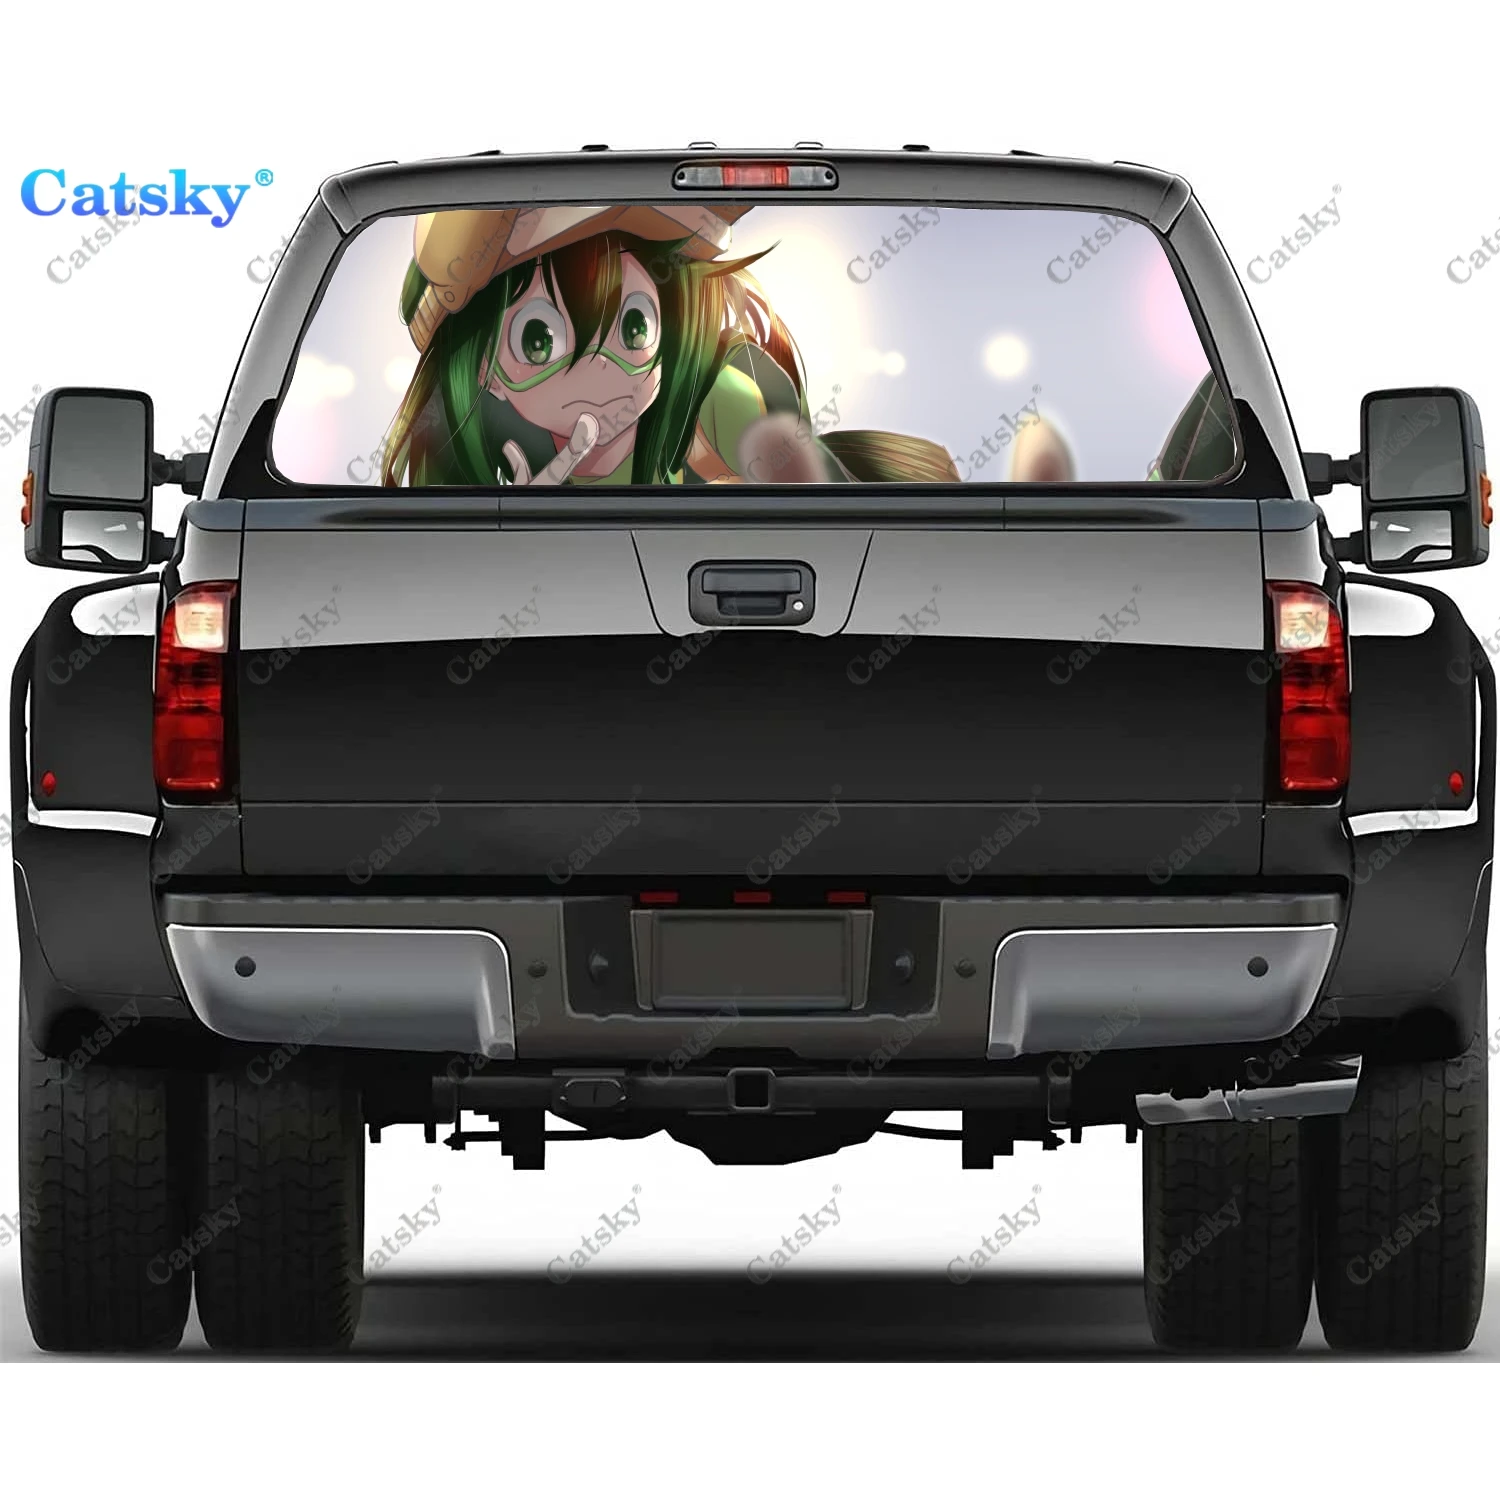 

Наклейки на заднее стекло Tsuyu Asui с аниме девушкой для грузовика, наклейка на окно пикапа, тинт для заднего окна, графические перфорированные виниловые наклейки для грузовика